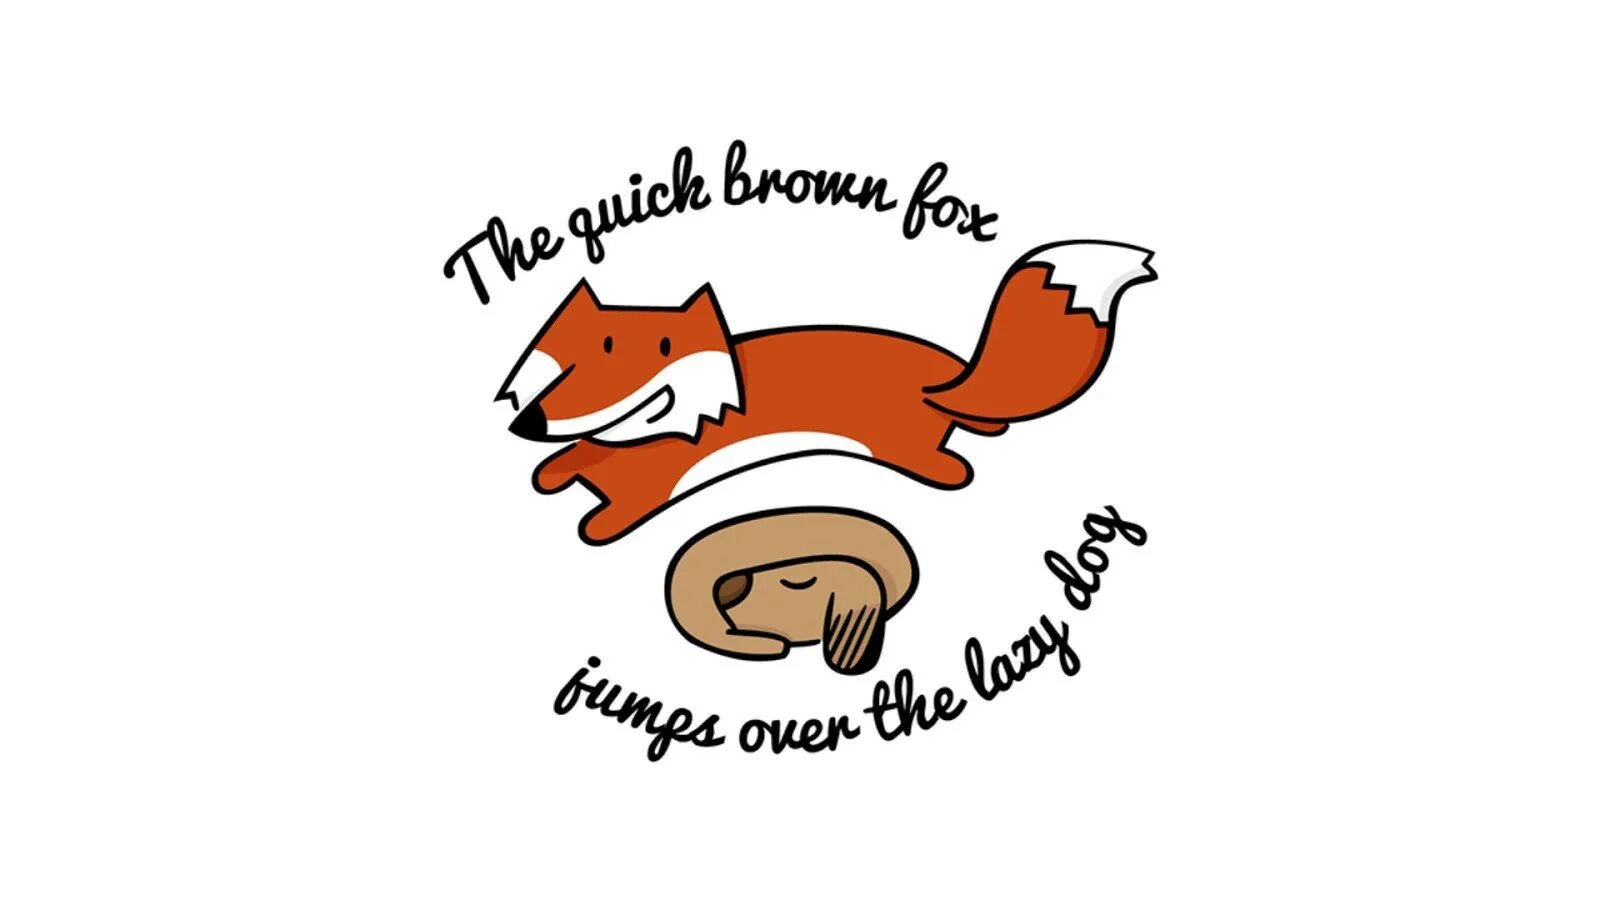 The quick brown fox jump. Лиса логотип. Быстрая коричневая лиса прыгает через ленивую собаку. Рыжая лиса прыгает через ленивую собаку. Панграмма английского алфавита.